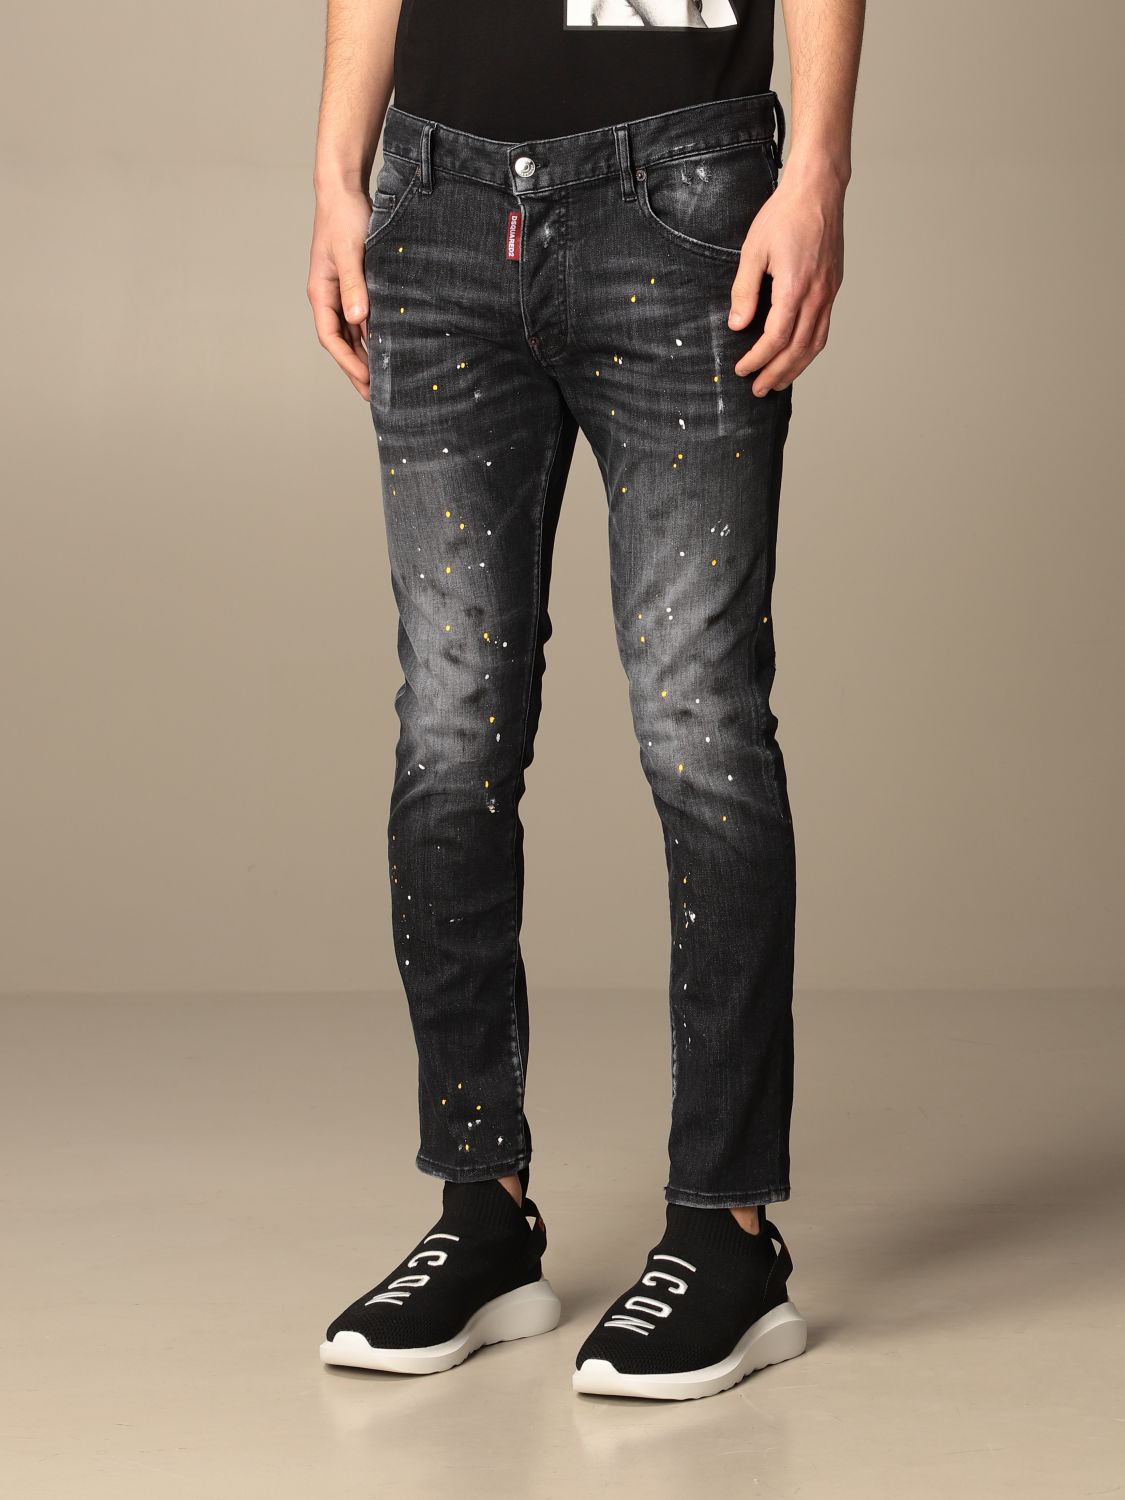 Dsquared2 ICON Jeans Designer New Fashion